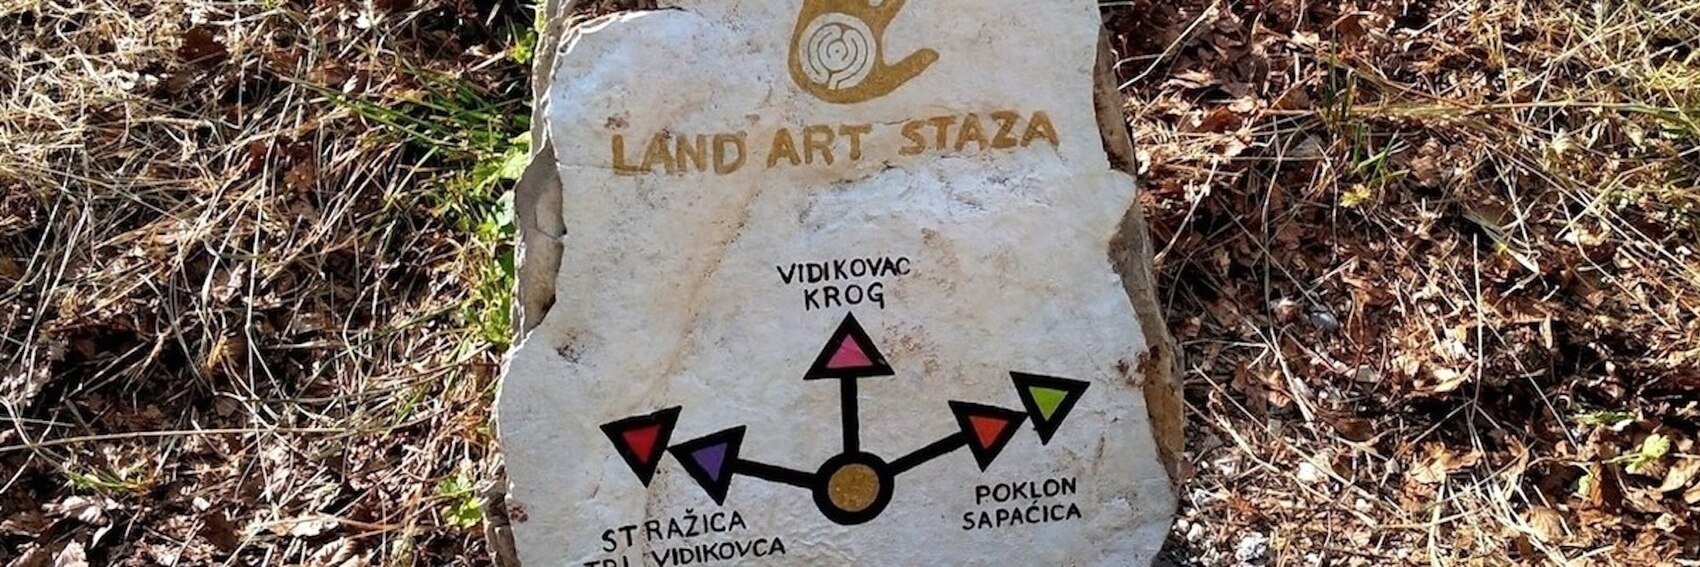 Land Art Trail on Mount Učka